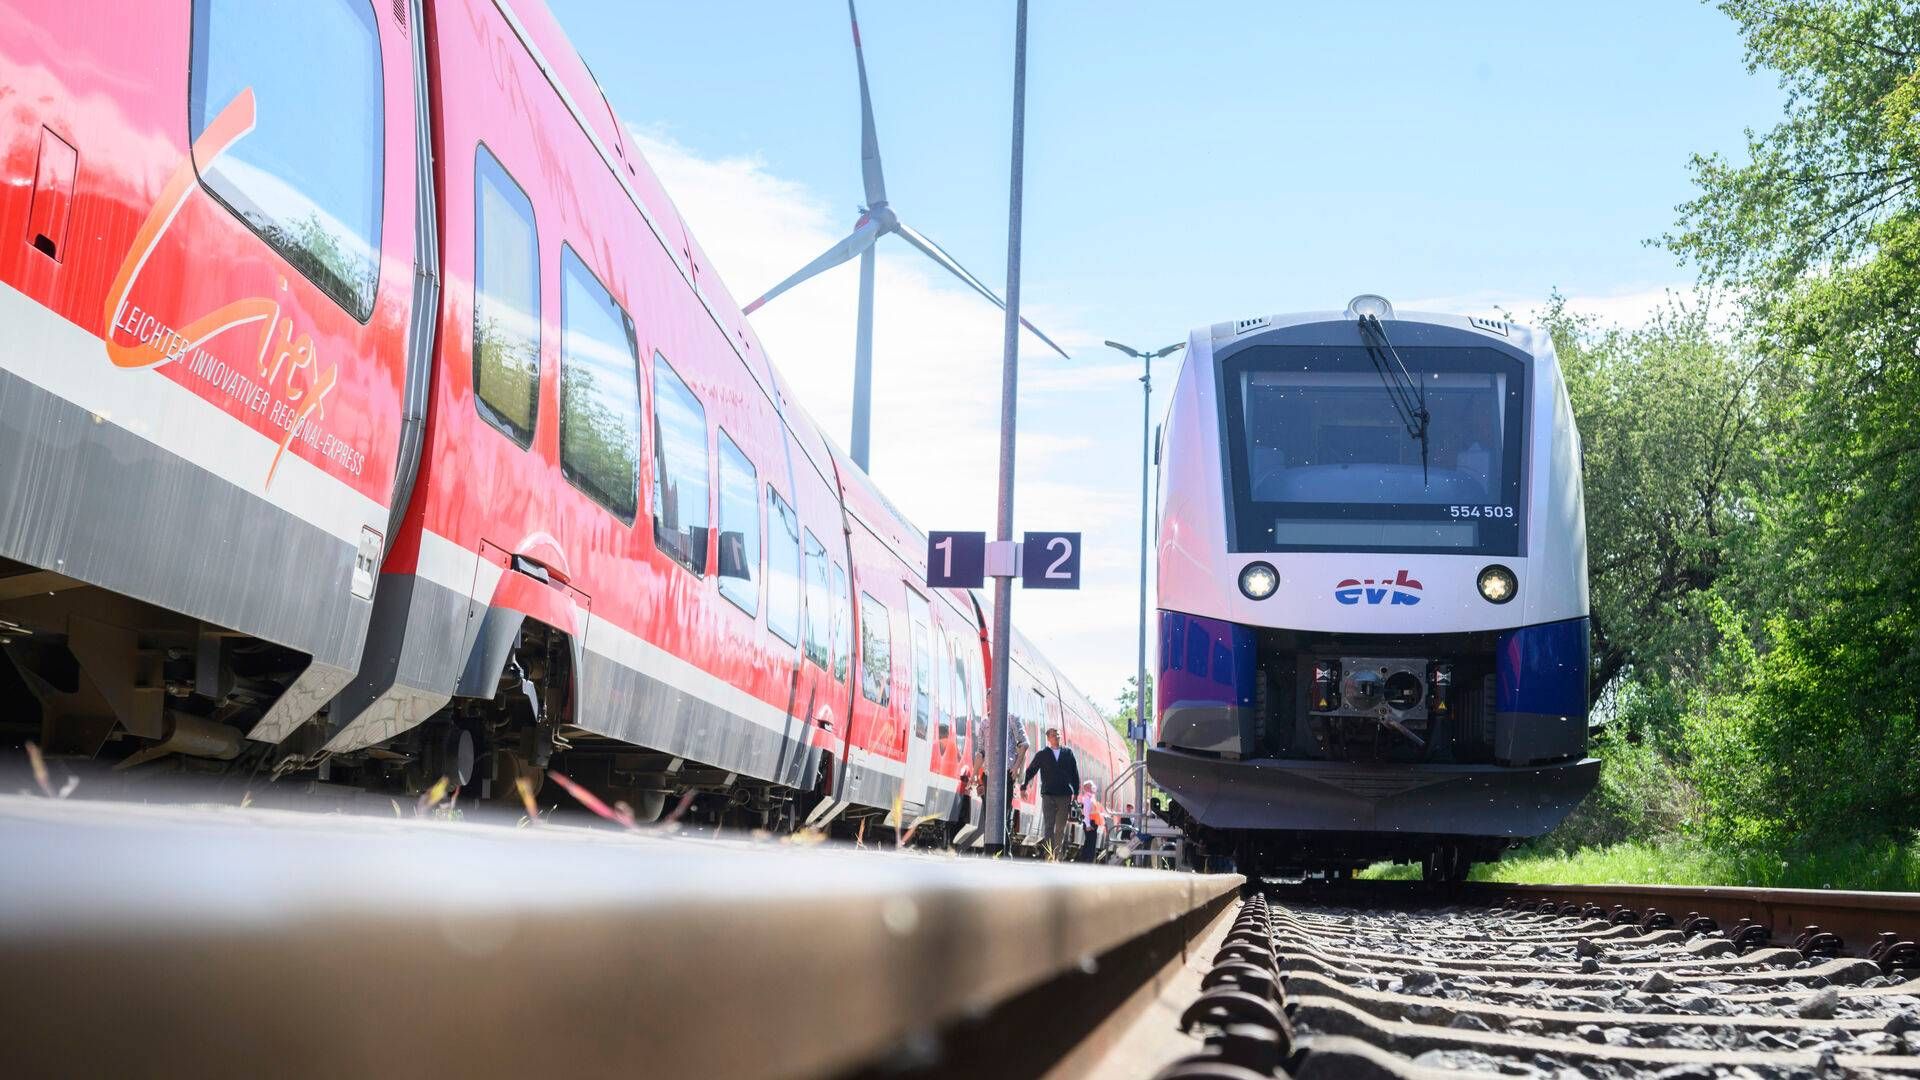 Togproducenten Alstom står blandt andet for levering af det danske signalsystem. | Foto: Julian Stratenschulte/AP/Ritzau Scanpix